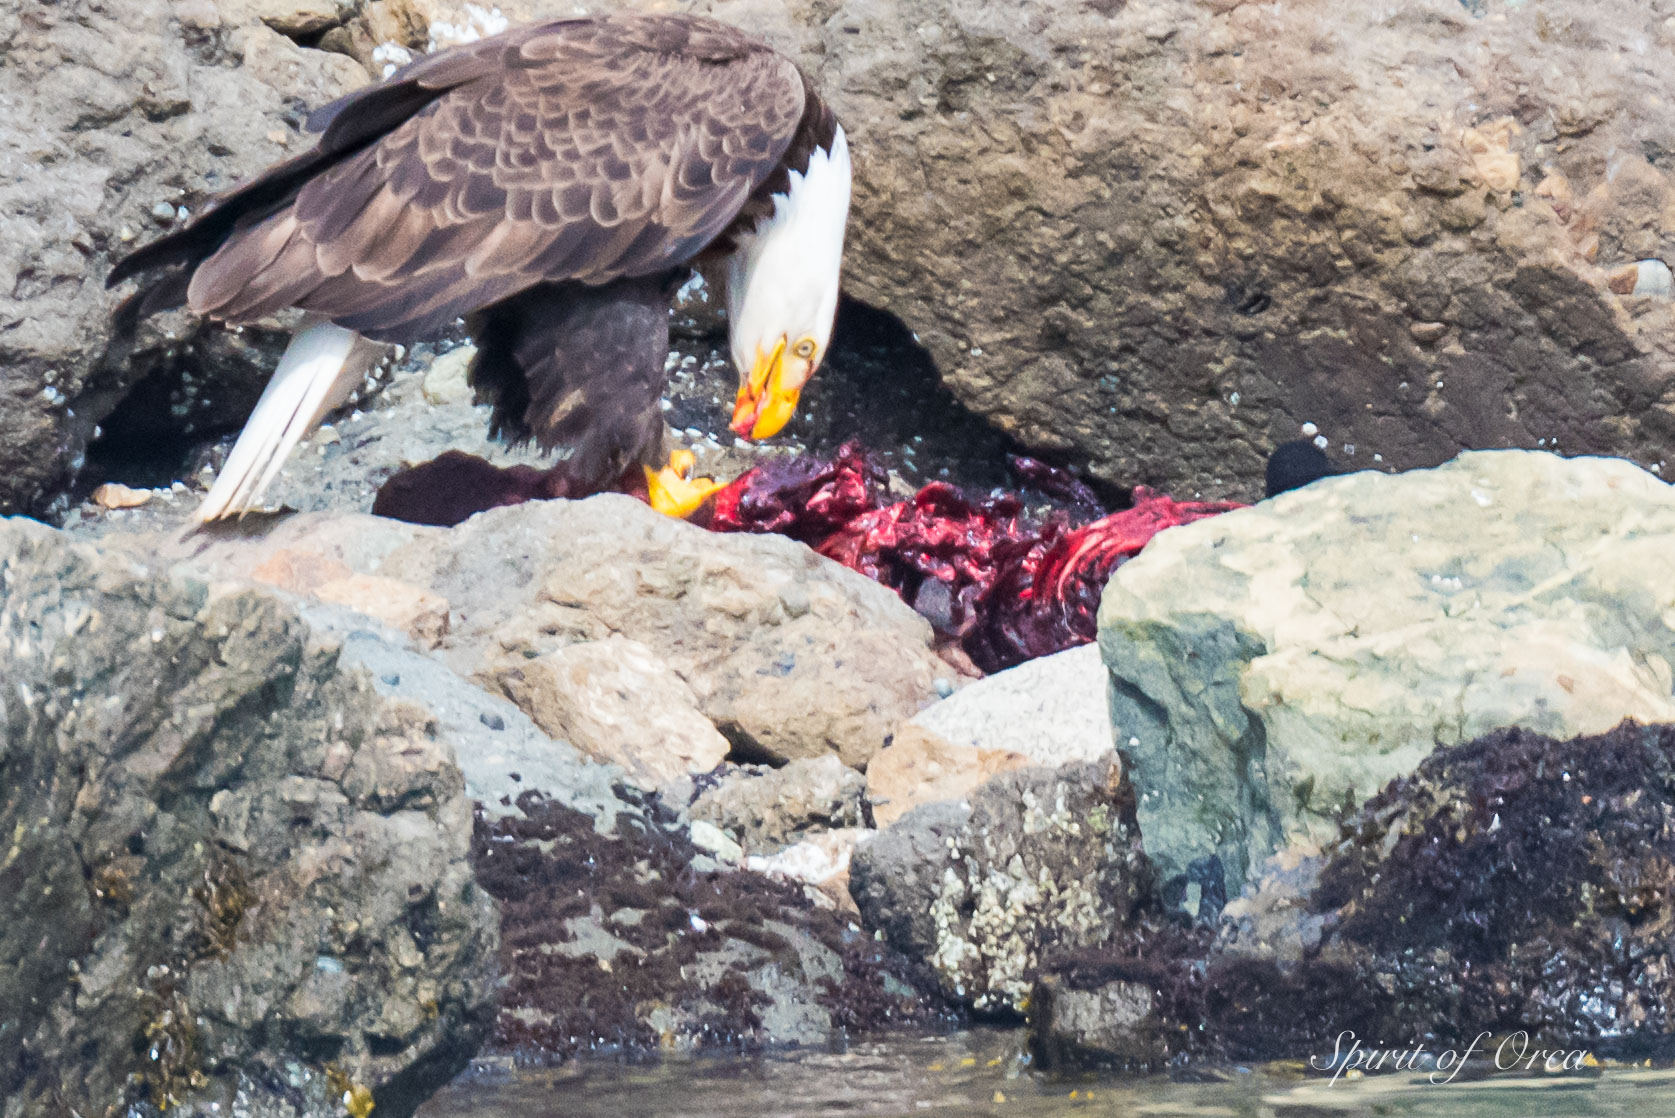 Bald Eagle feeding on carcass